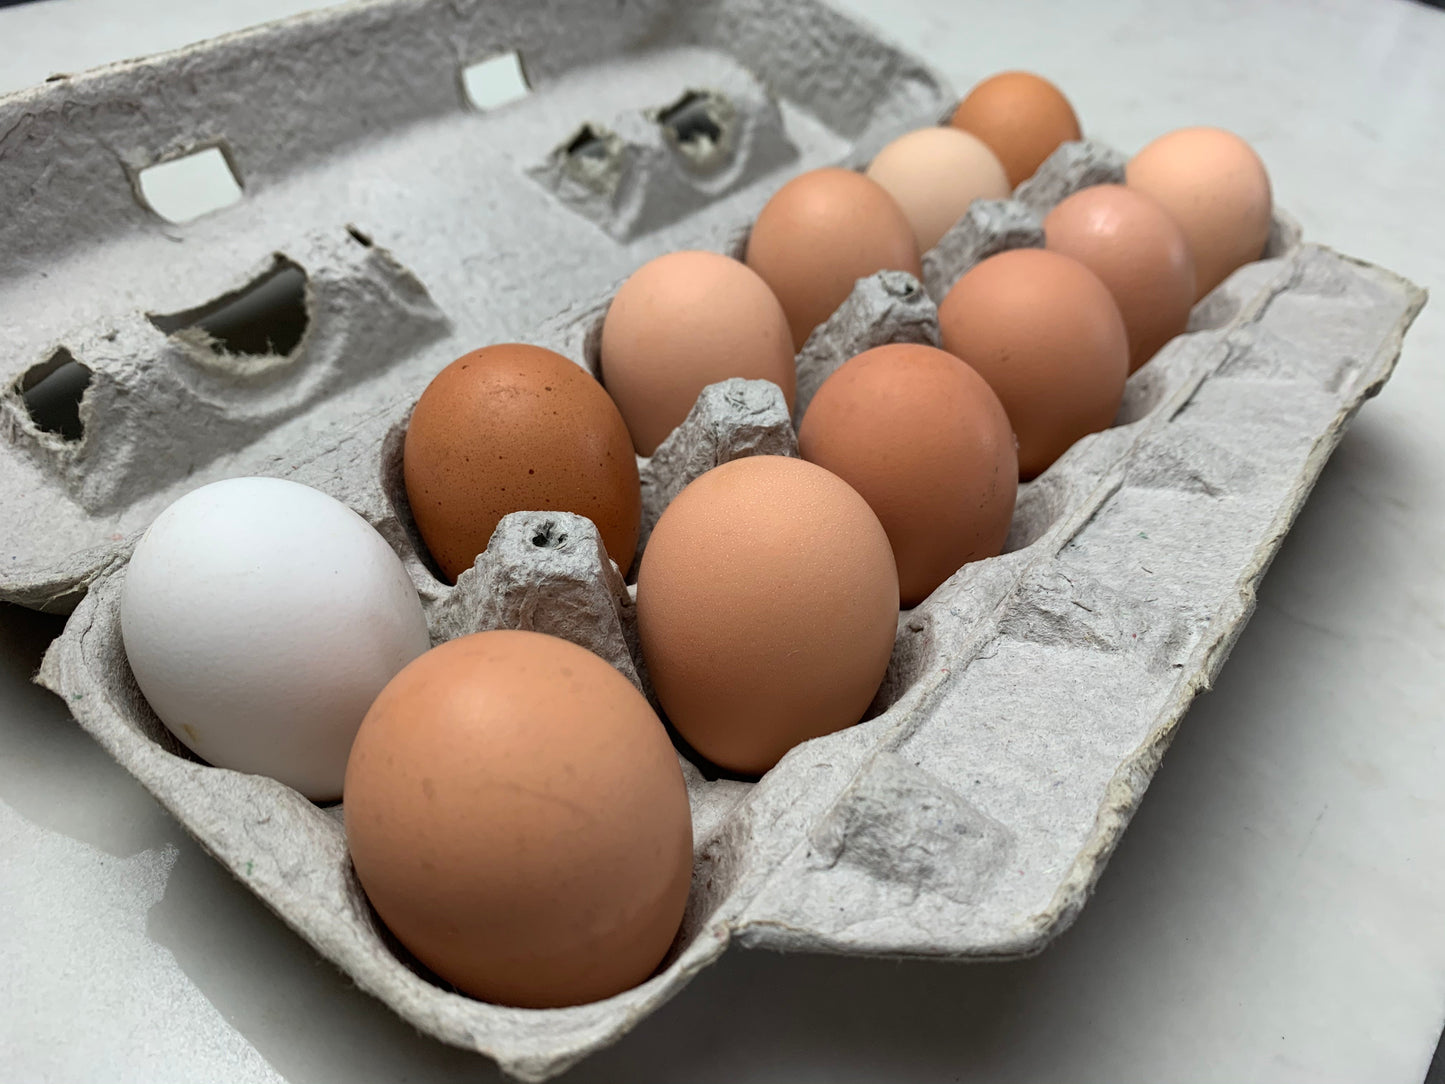 Chicken Eggs (Large) - 1 dozen